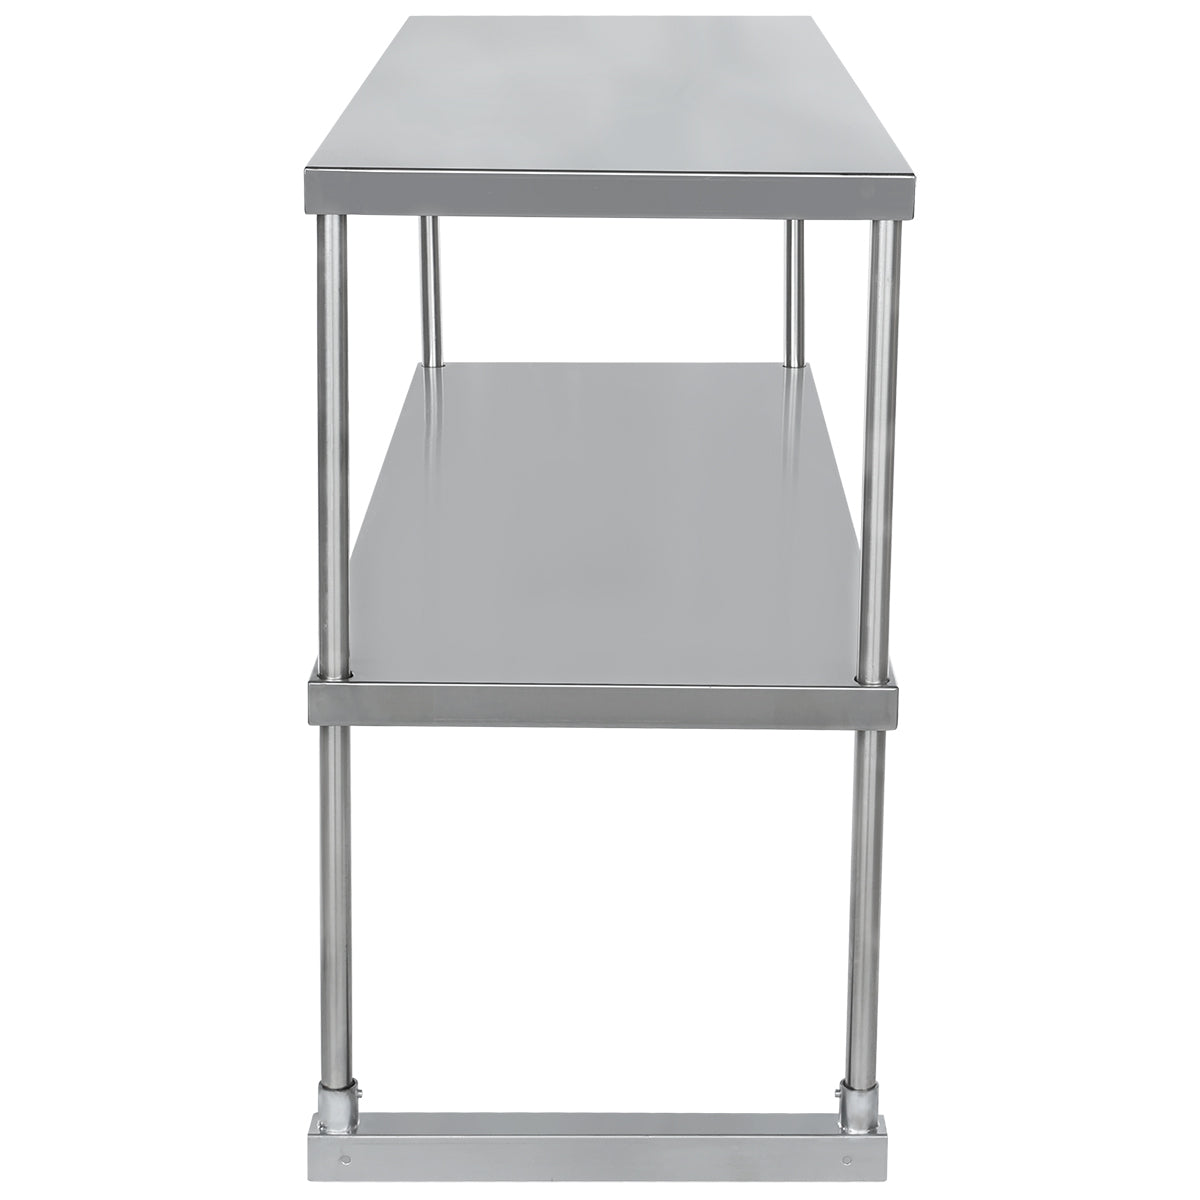 Empura EDOS1848 Overshelf Table-mounted Standard